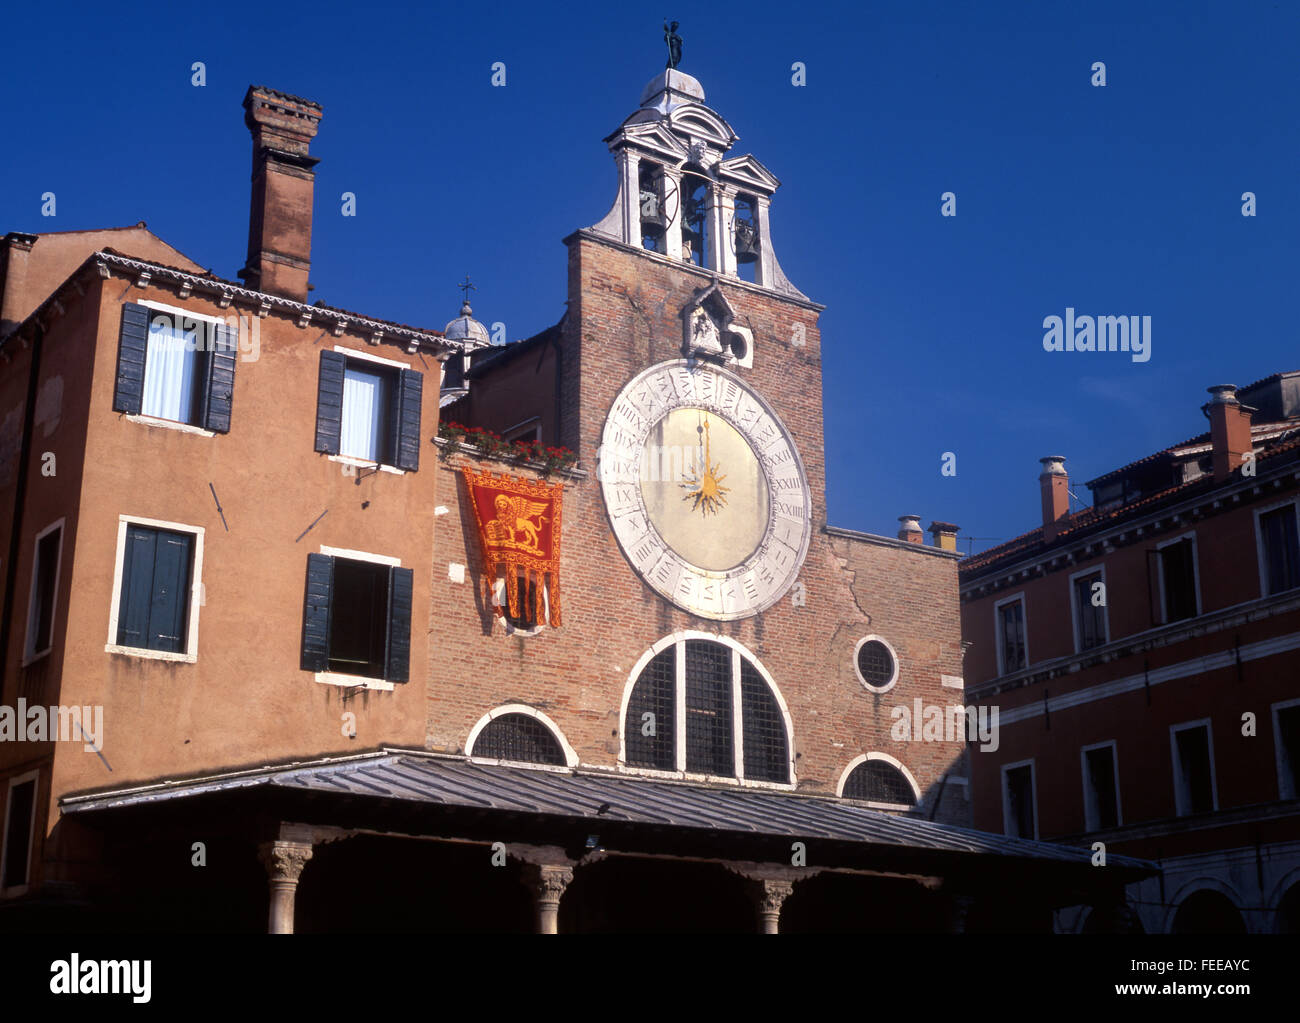 Venice Venezia San Giacomo di Rialto church facade front with astrological clock Venice Veneto Italy Stock Photo